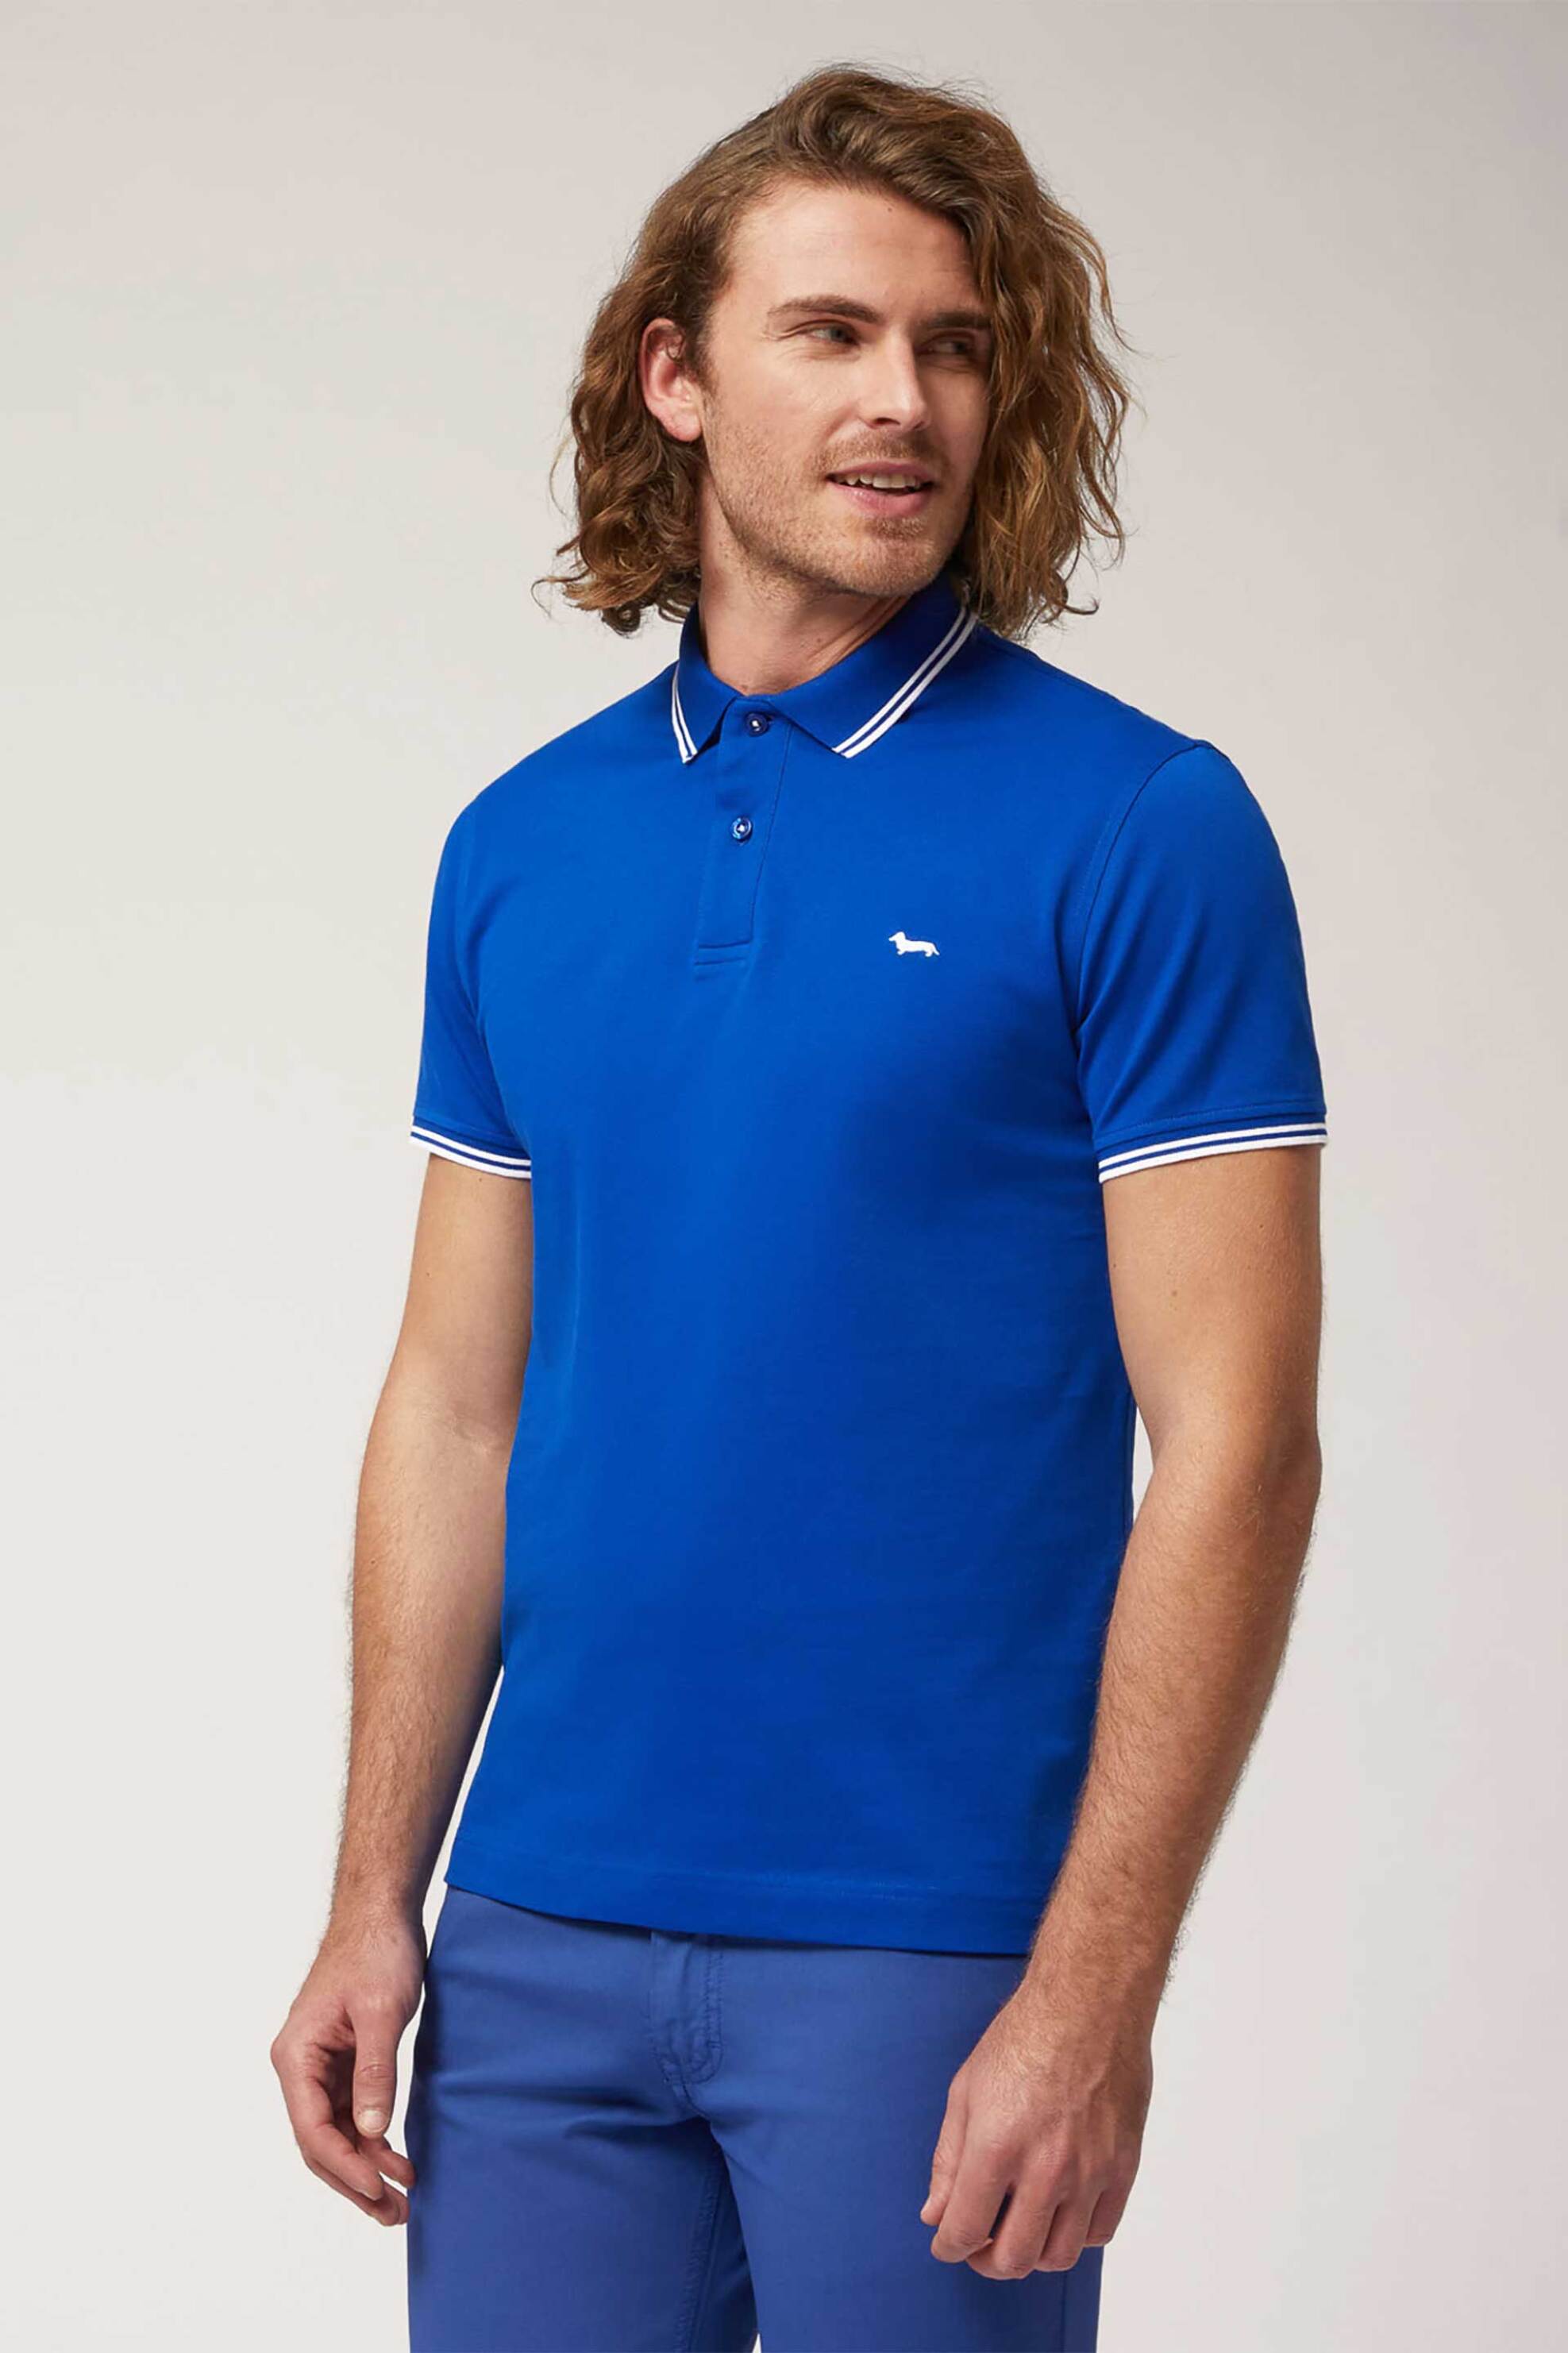 Ανδρική Μόδα > Ανδρικά Ρούχα > Ανδρικές Μπλούζες > Ανδρικές Μπλούζες Πολο Harmont & Blaine ανδρική κοντομάνικη πόλο μπλούζα πικέ με κεντημένο λογότυπο Narrow Fit - LNL010021148 Μπλε